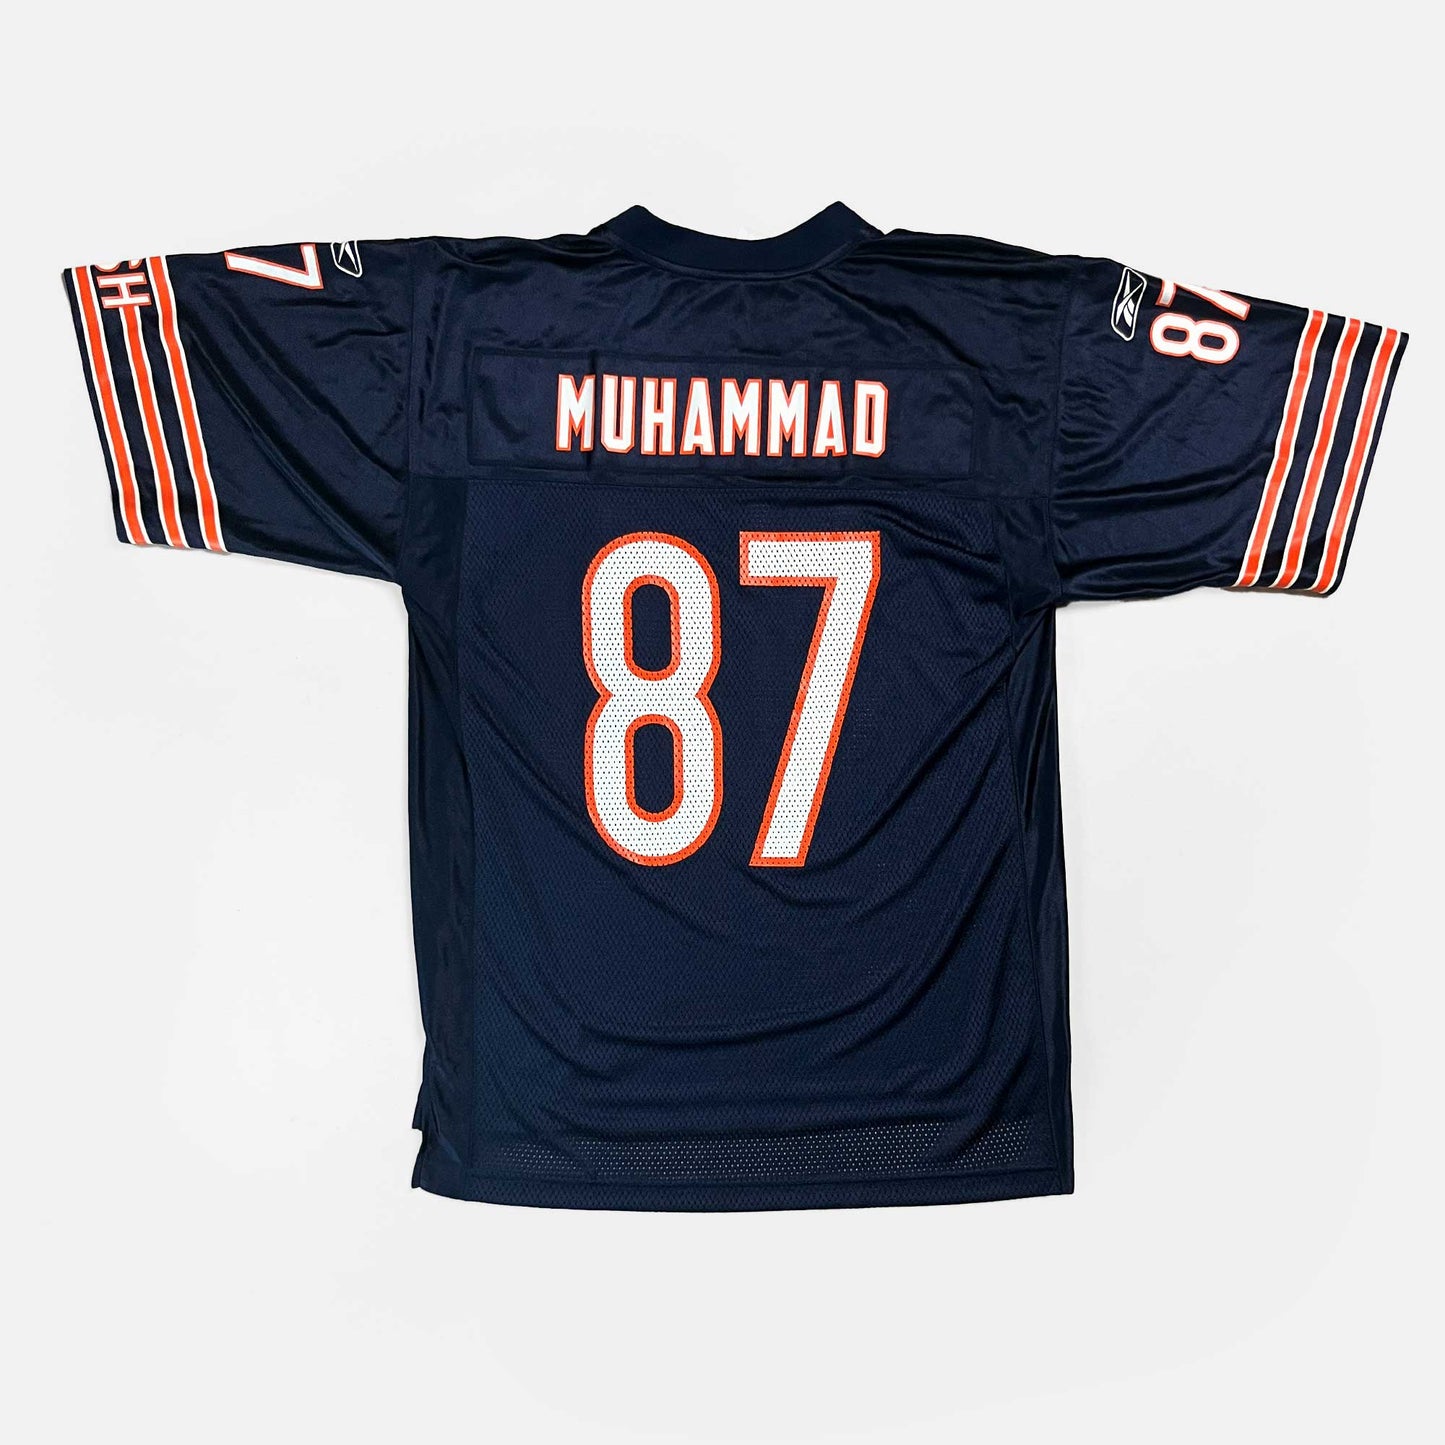 Chicago Bears - Muhsin Muhammad - Größe M - Reebok - NFL Trikot